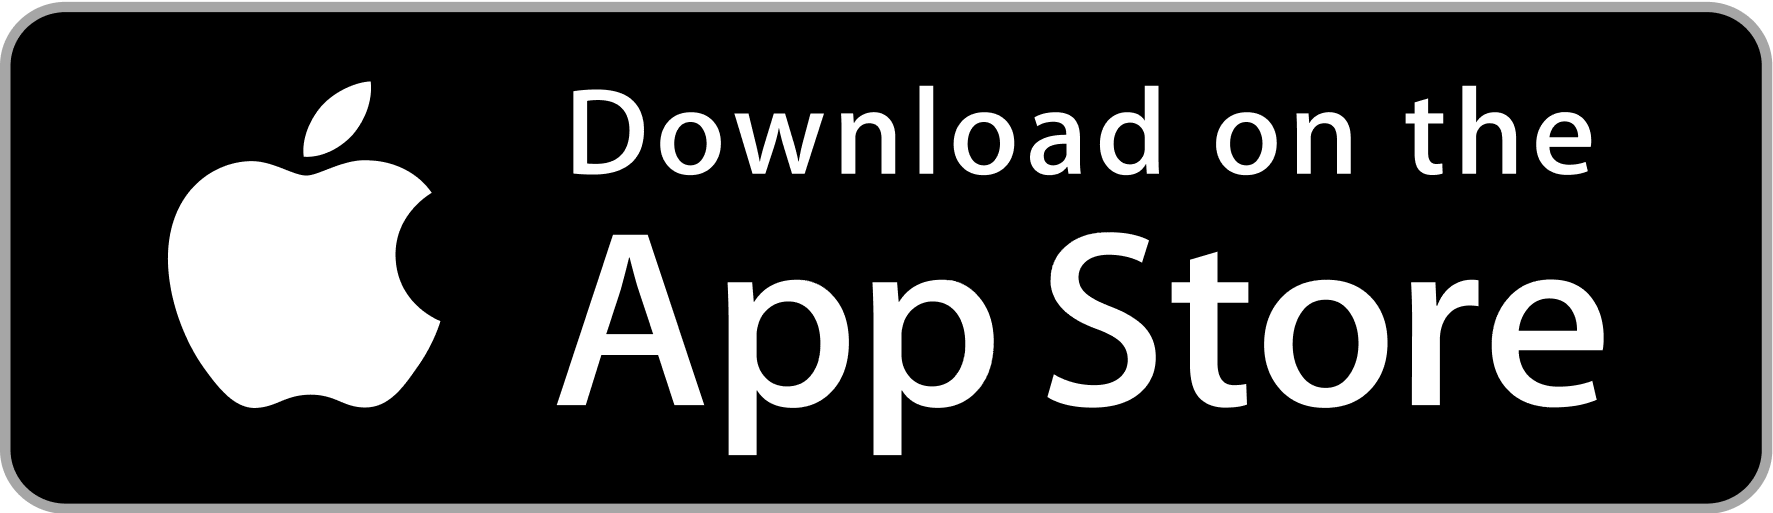 Lataa sovellus App Storesta